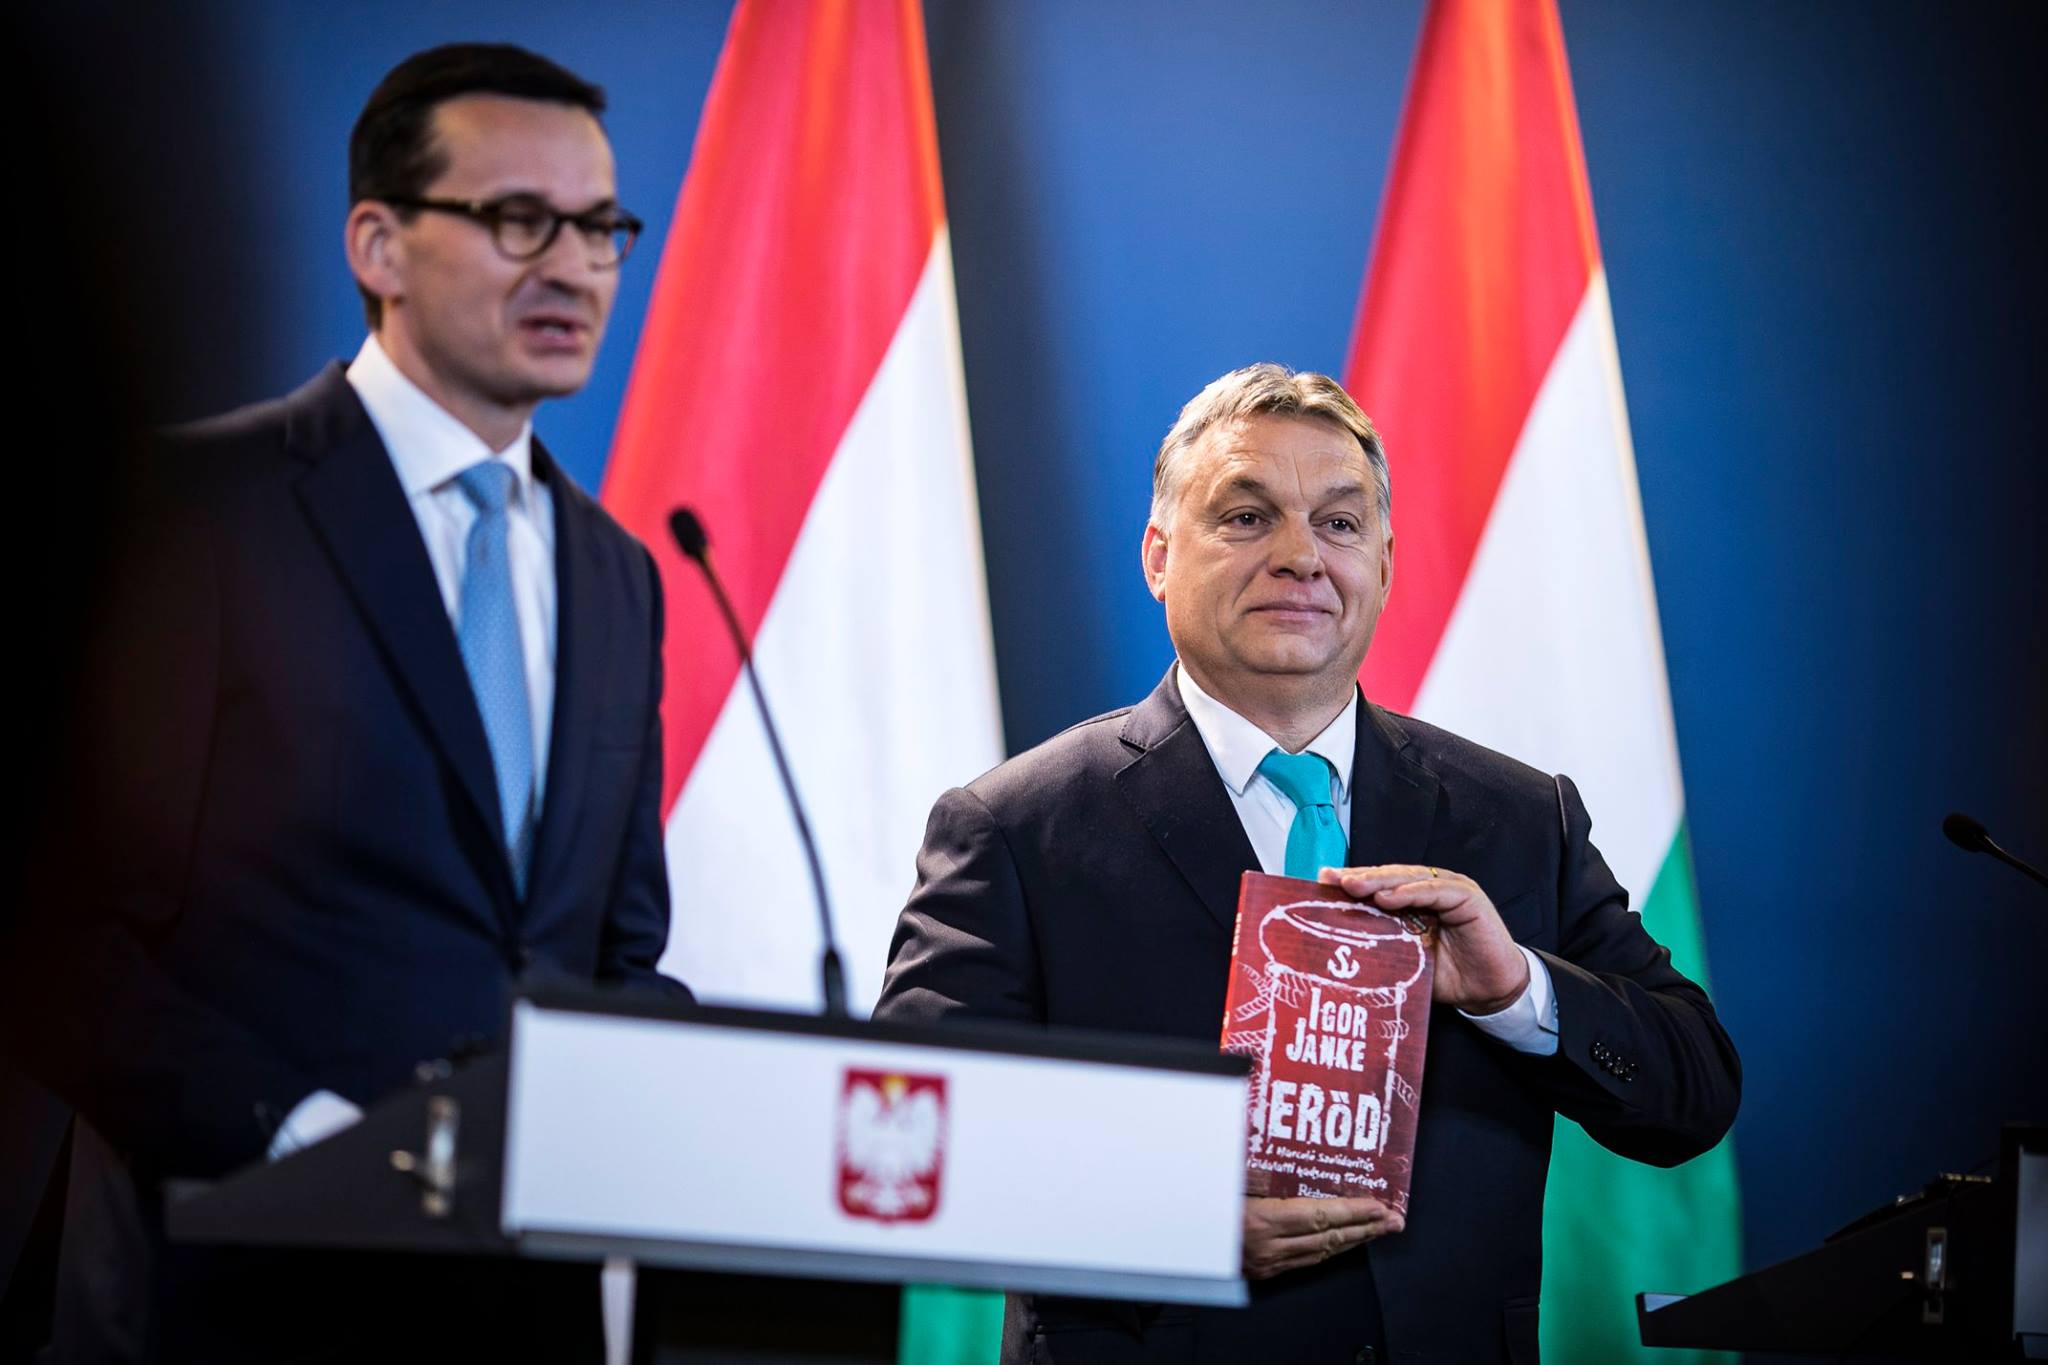 Polonia Ungheria democrazia